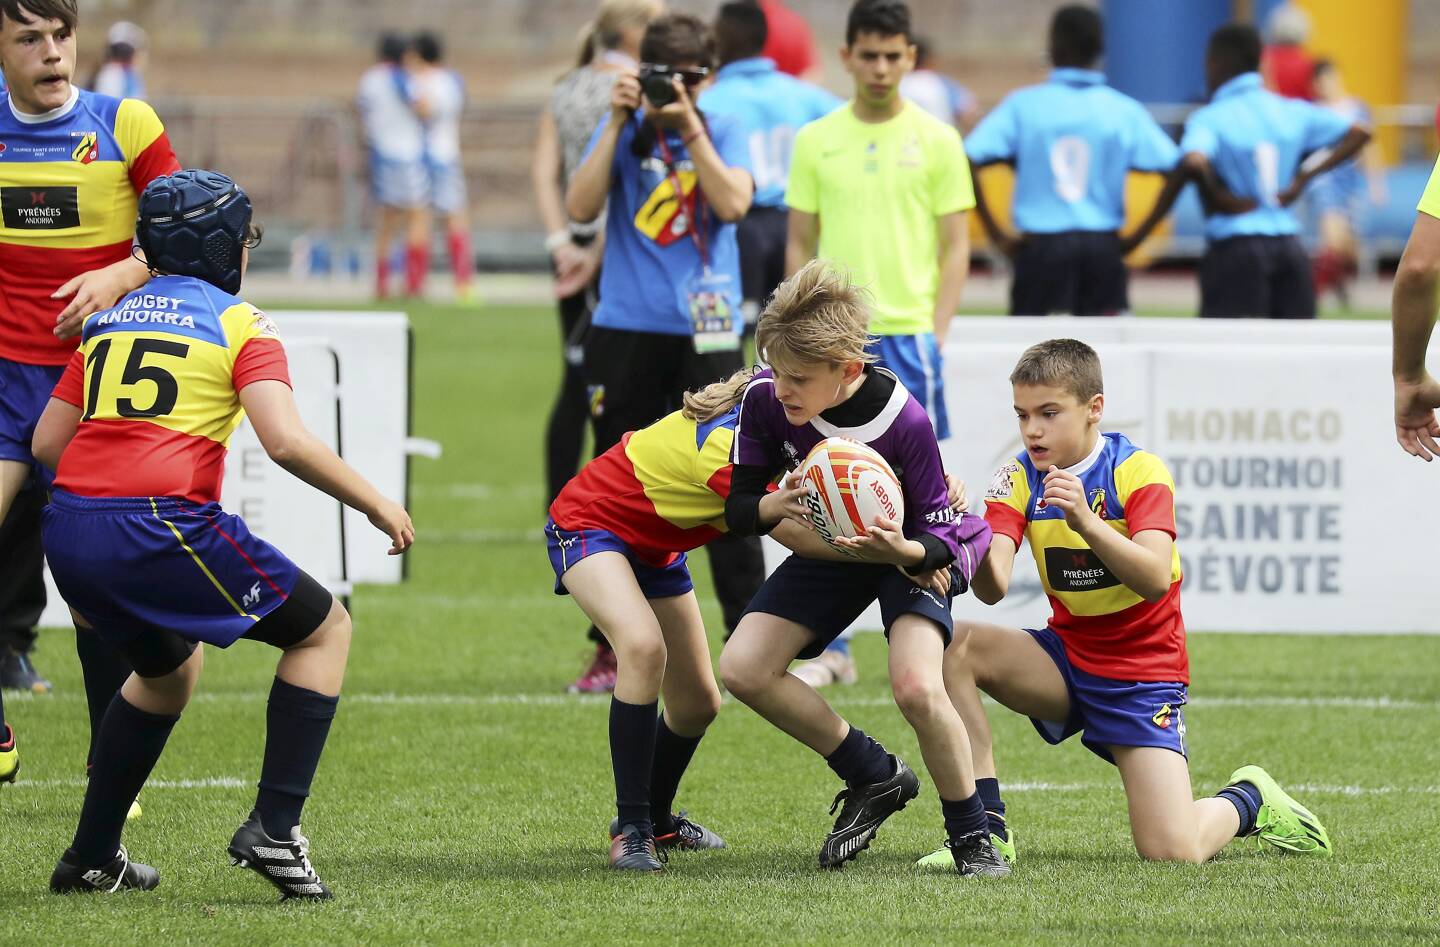 Antoine Zeghdar parrainera cette 12e édition auprès des jeunes rugbymen de moins de 12 ans.